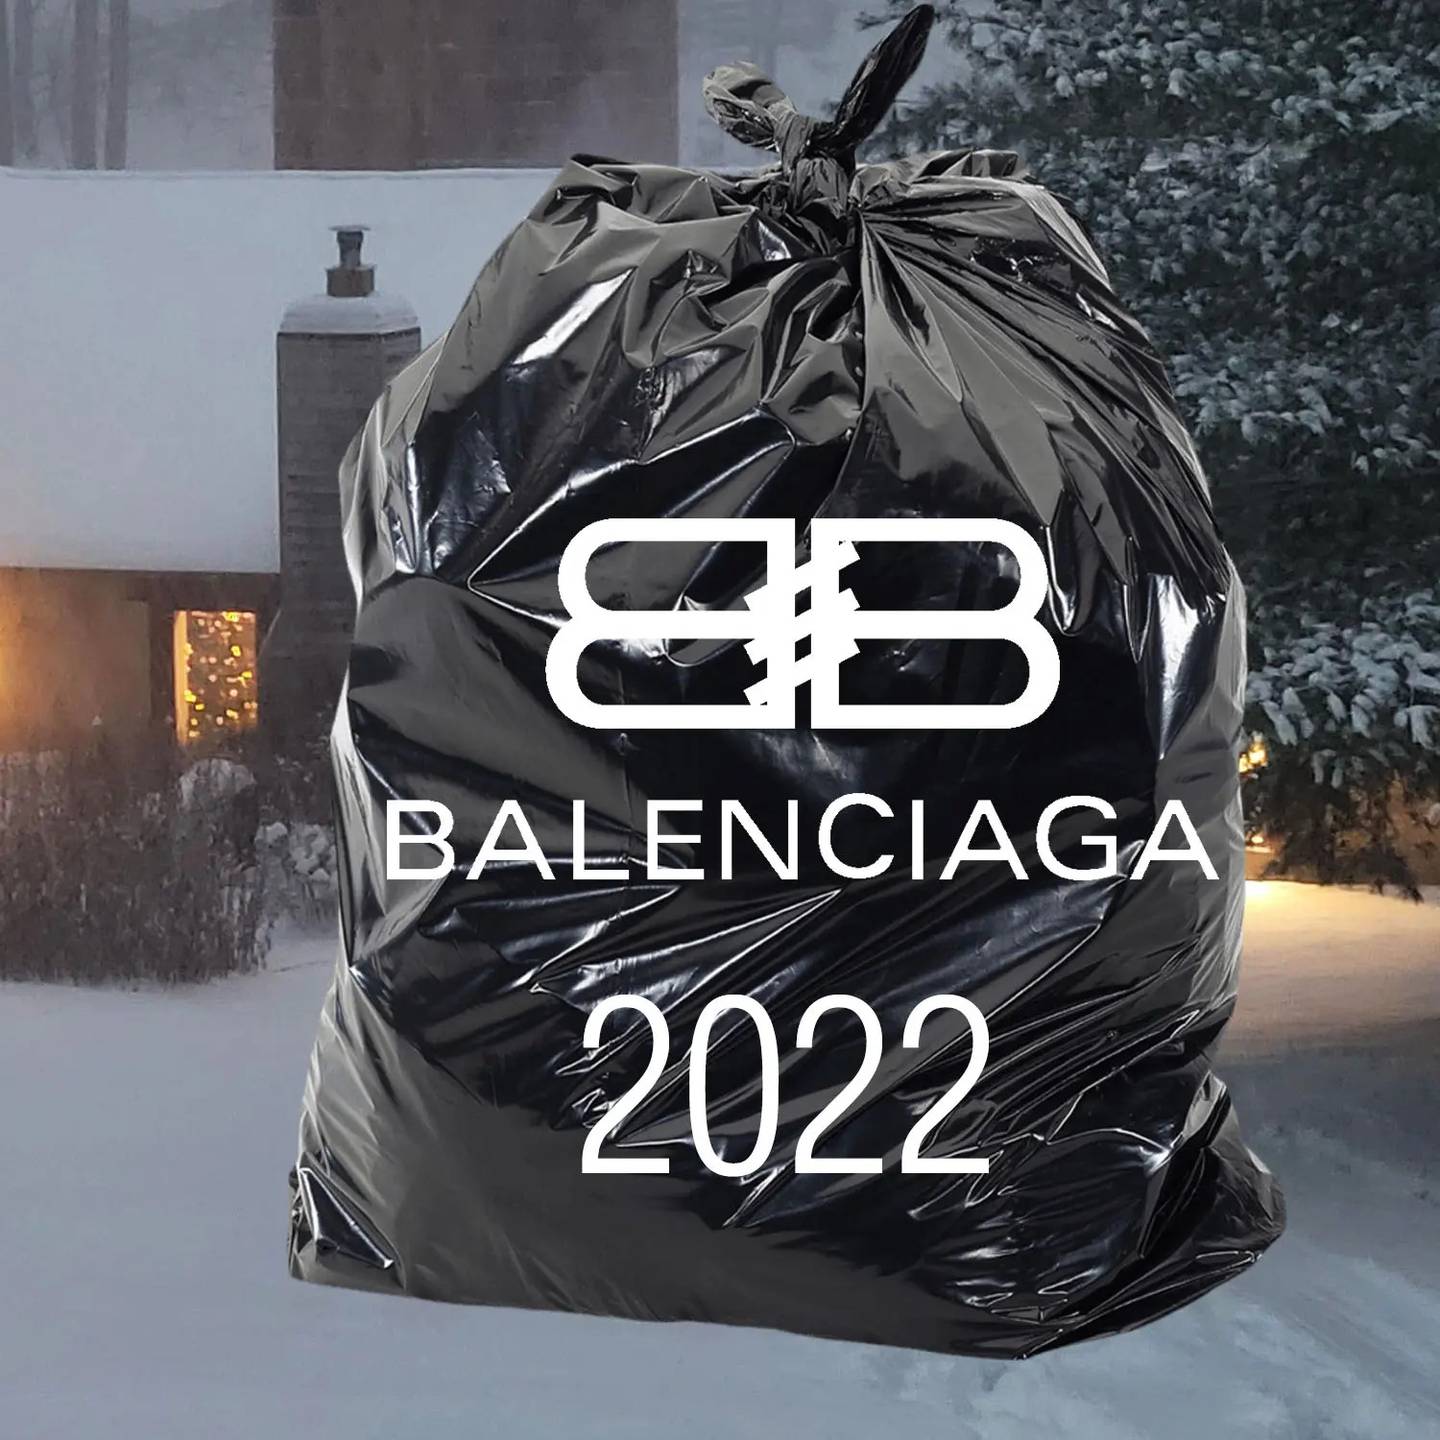 Balenciaga came under fire for their holiday season advertisement campaign.  Photo: Balenciaga